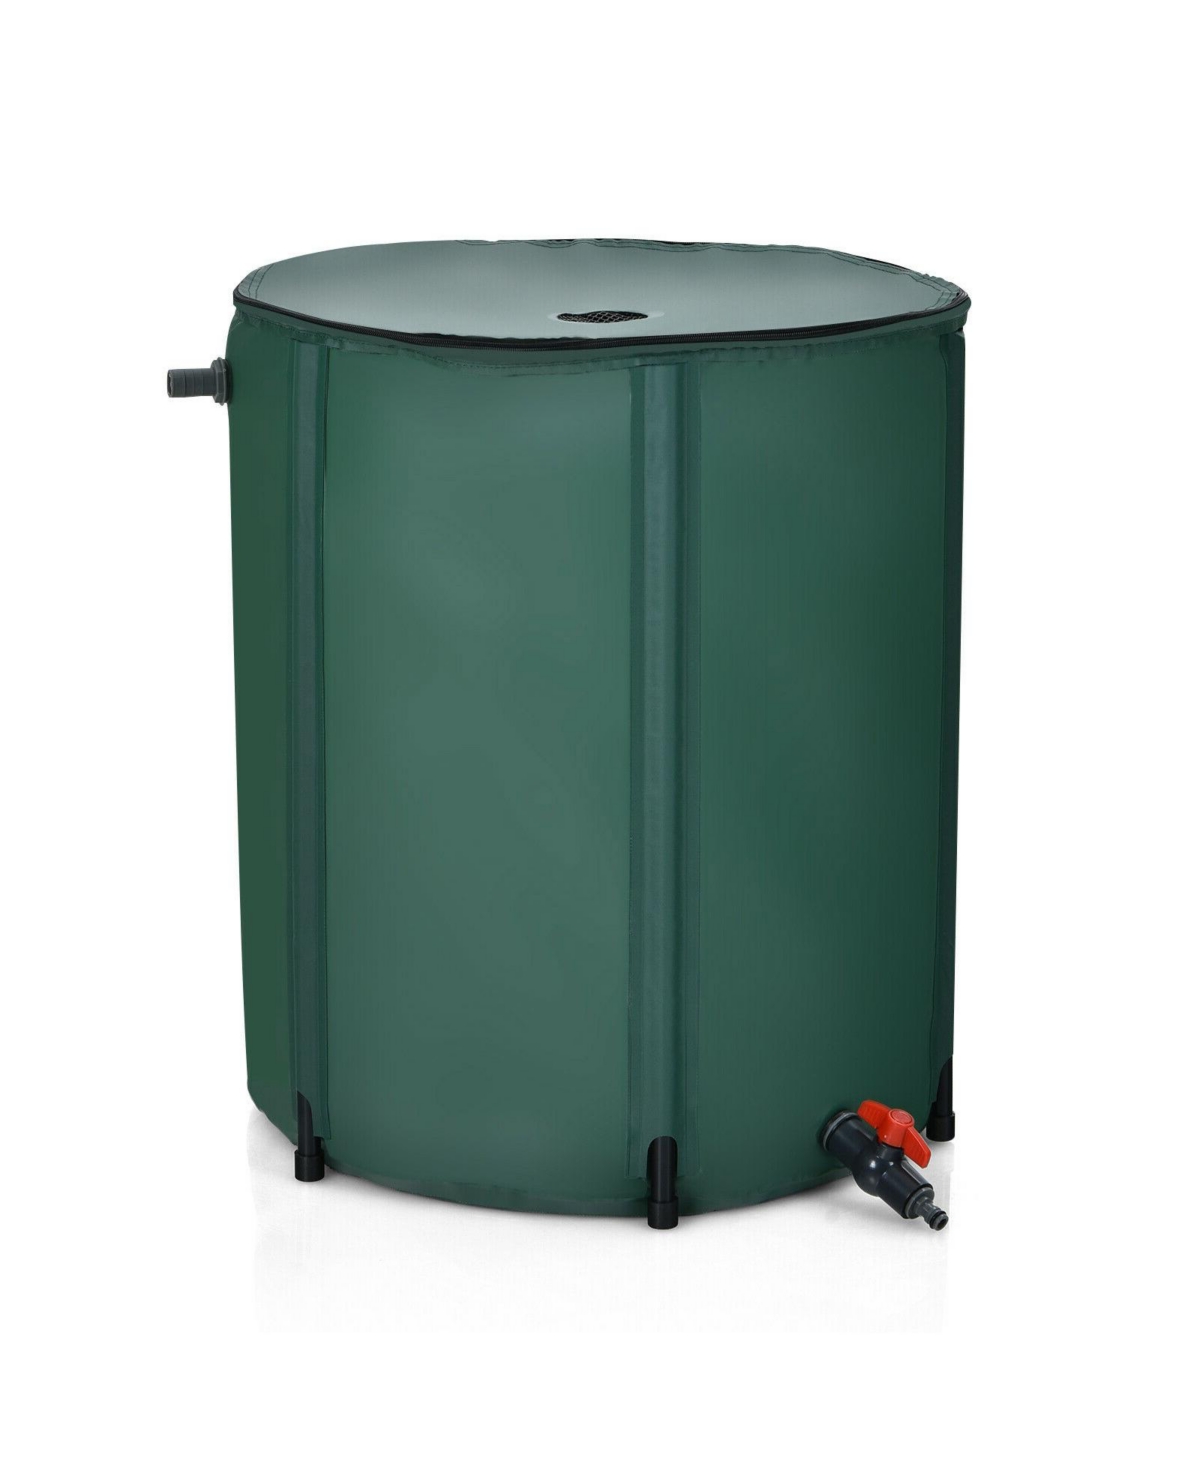 53 Gallon Portable Collapsible Rain Barrel Water Collector - Green